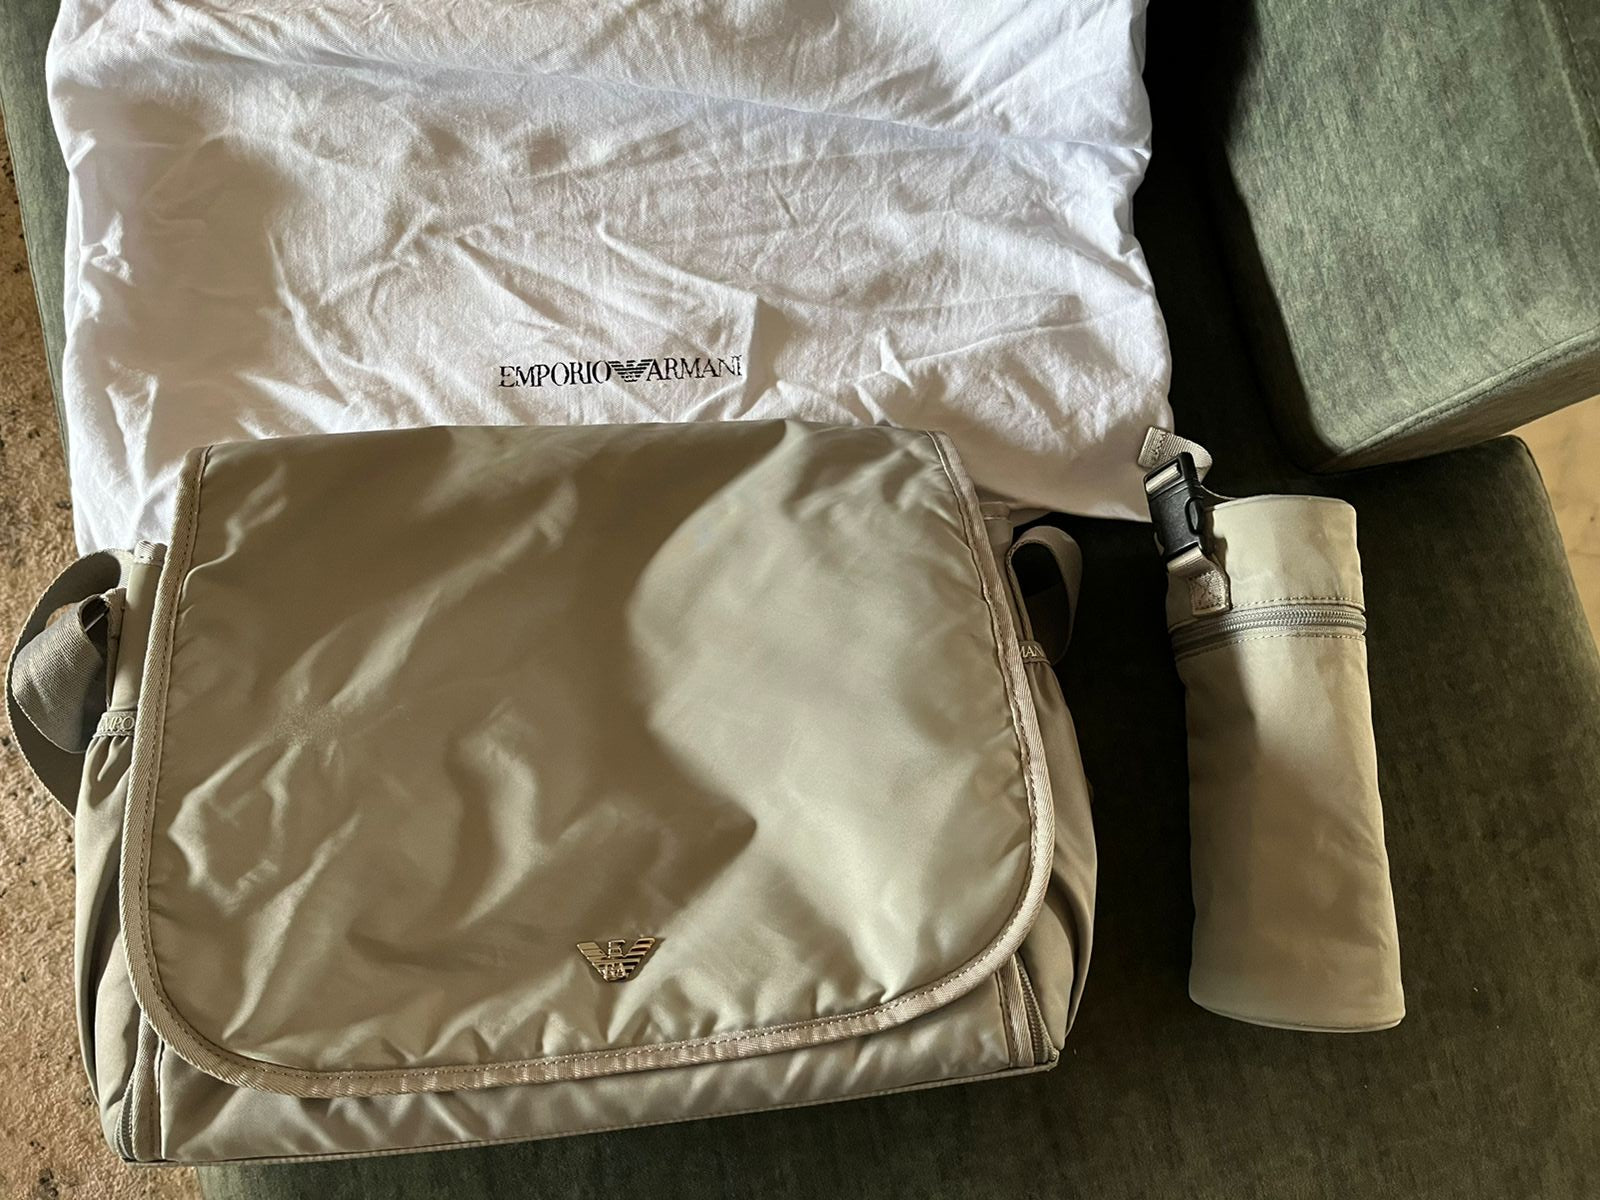 Emporio Armani Diaper Bag – Uptot